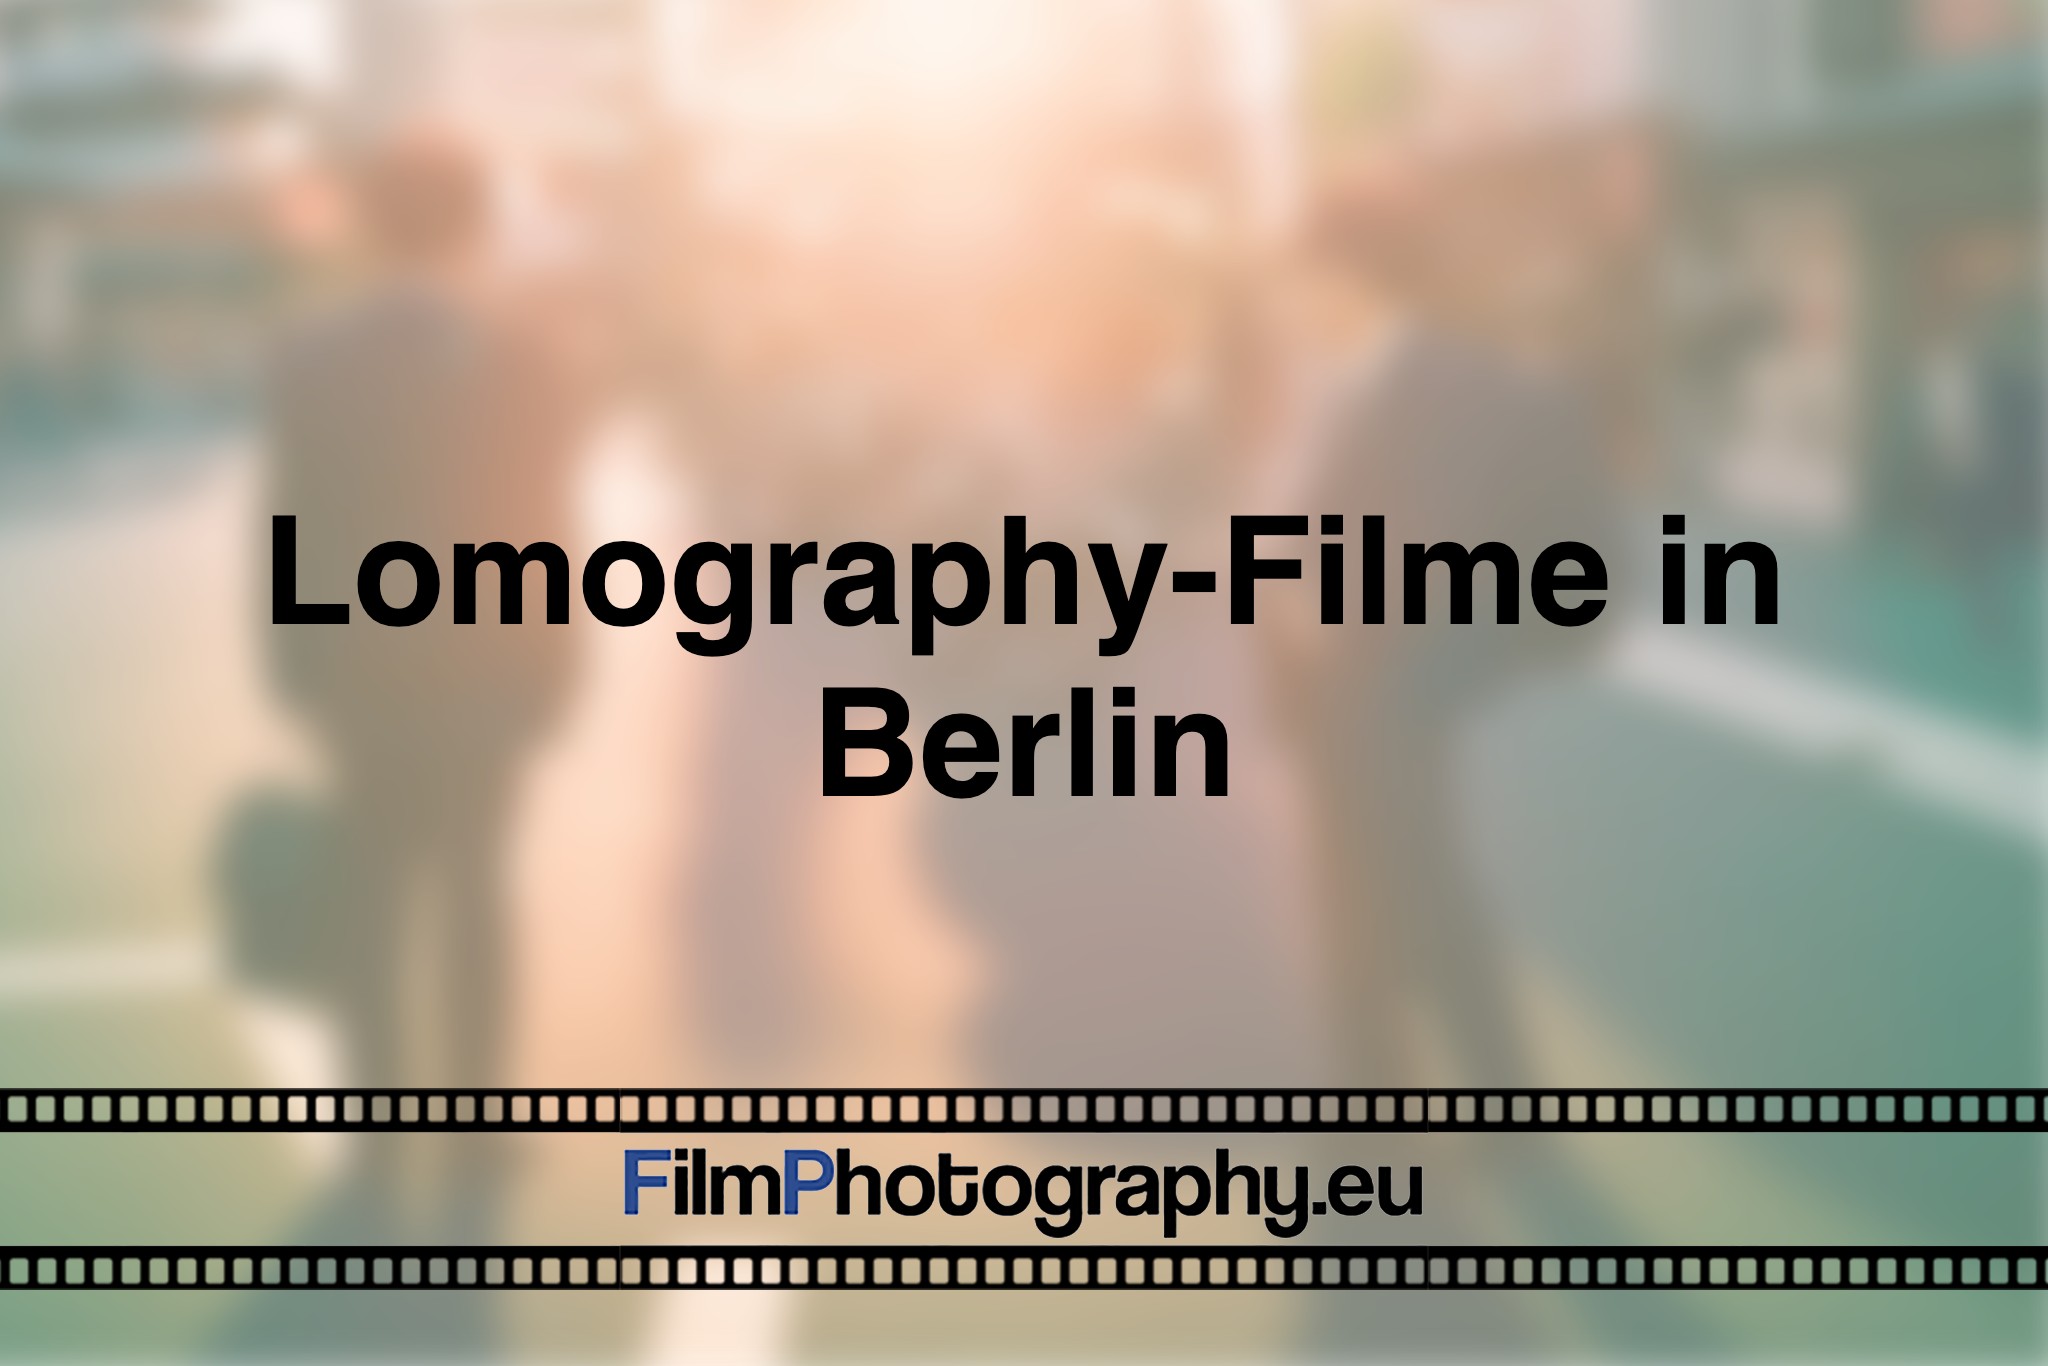 lomography-filme-in-berlin-photo-bnv